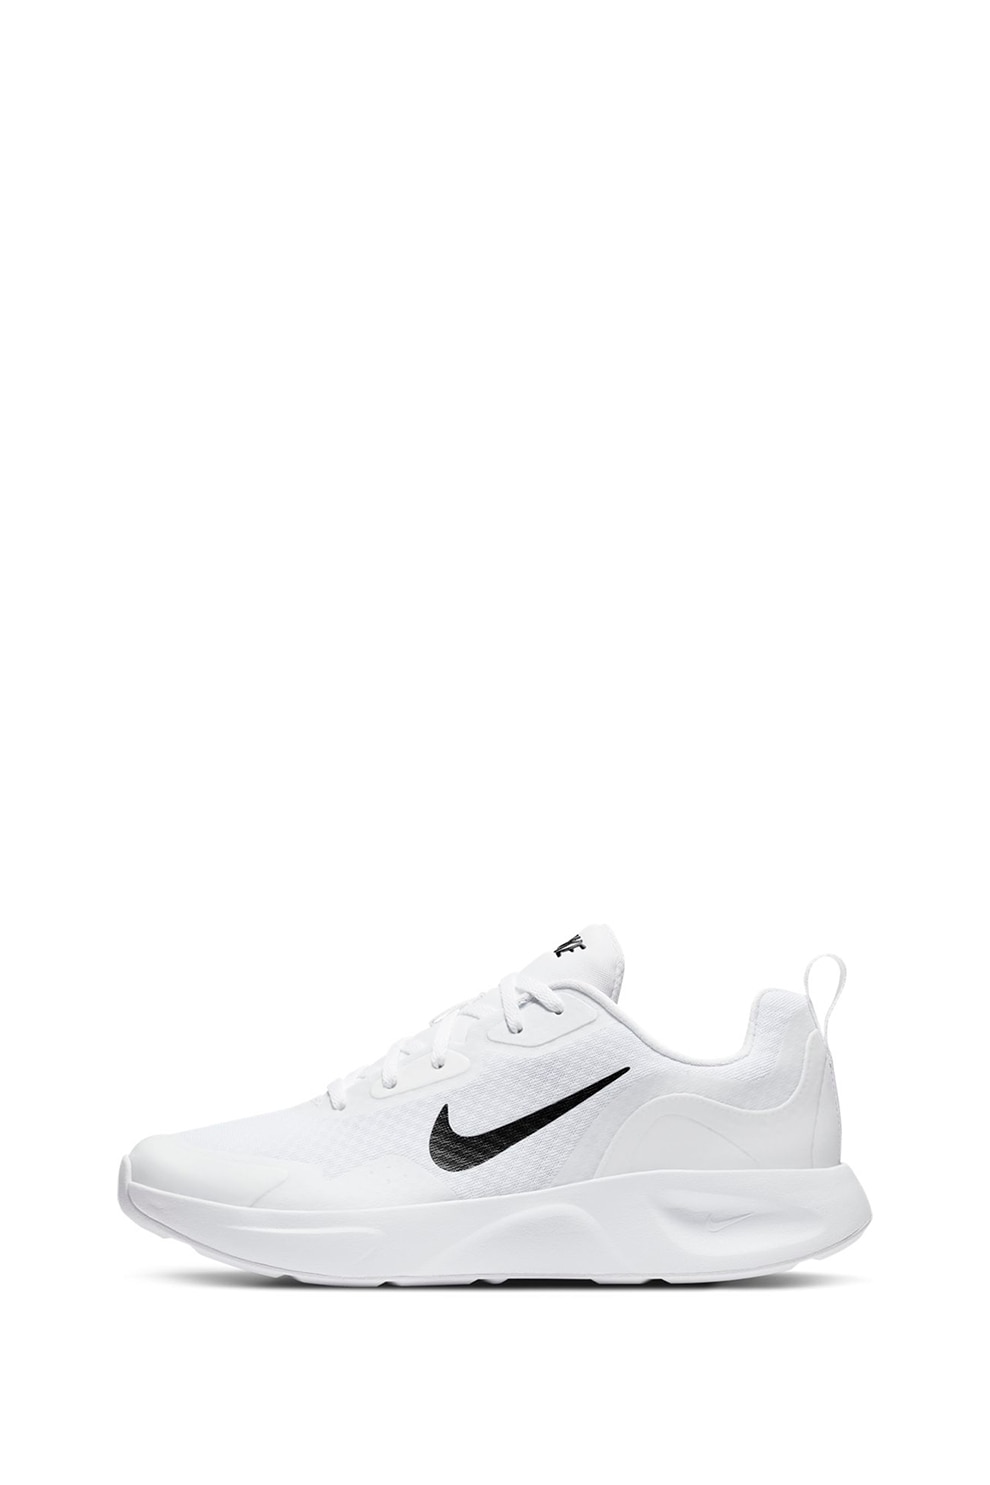 Nike, Pantofi cu insertii plasa, pentru All Day - eMAG.ro